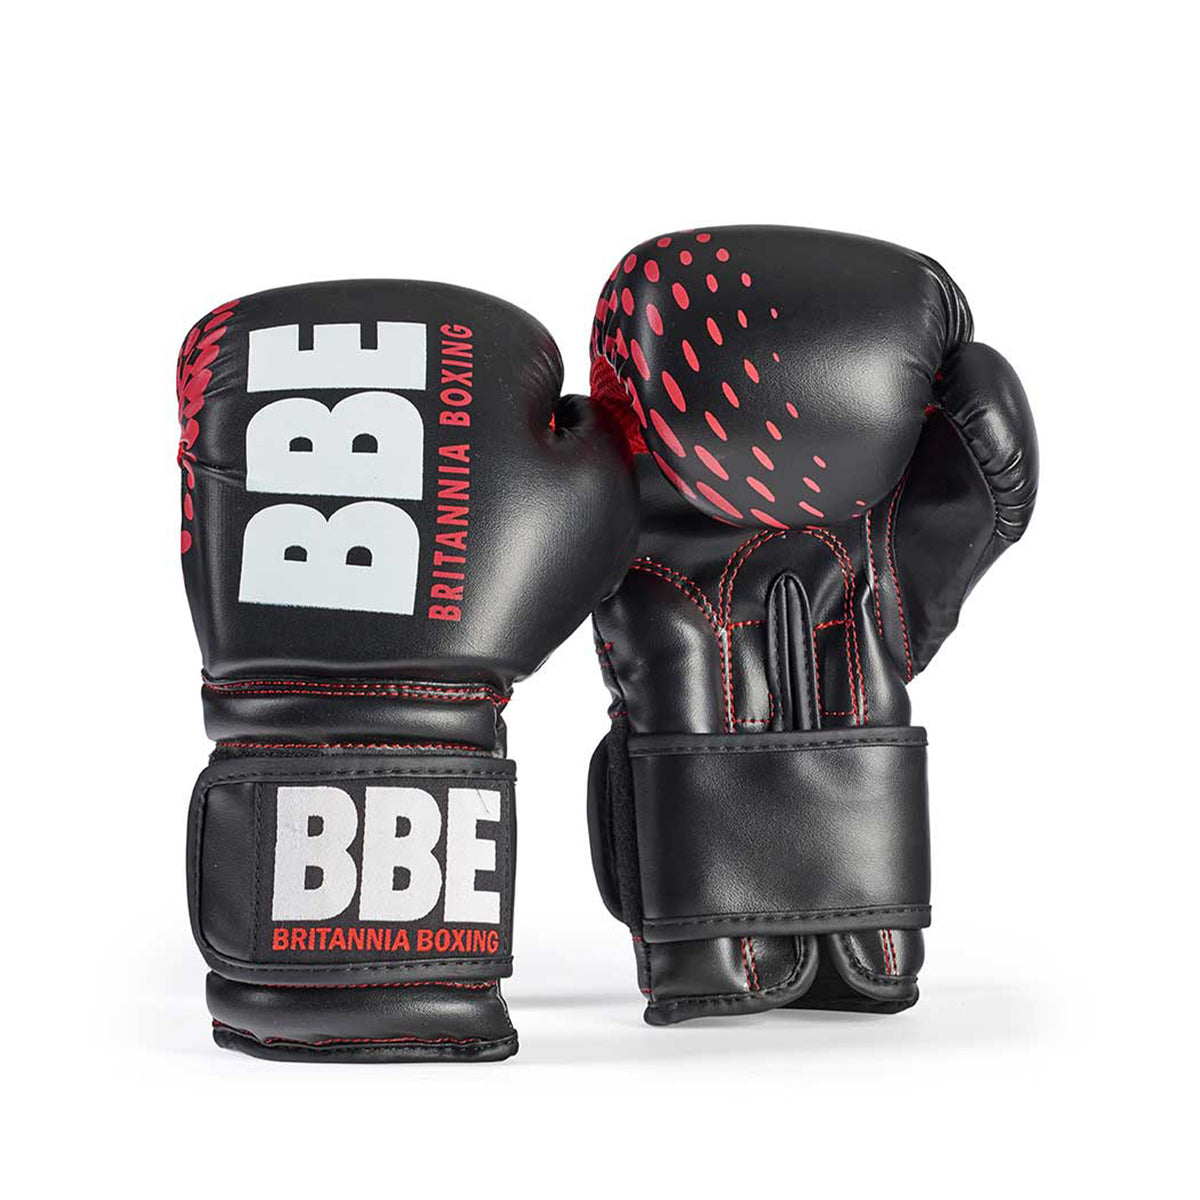 BBE FS Training Bag/Gloves